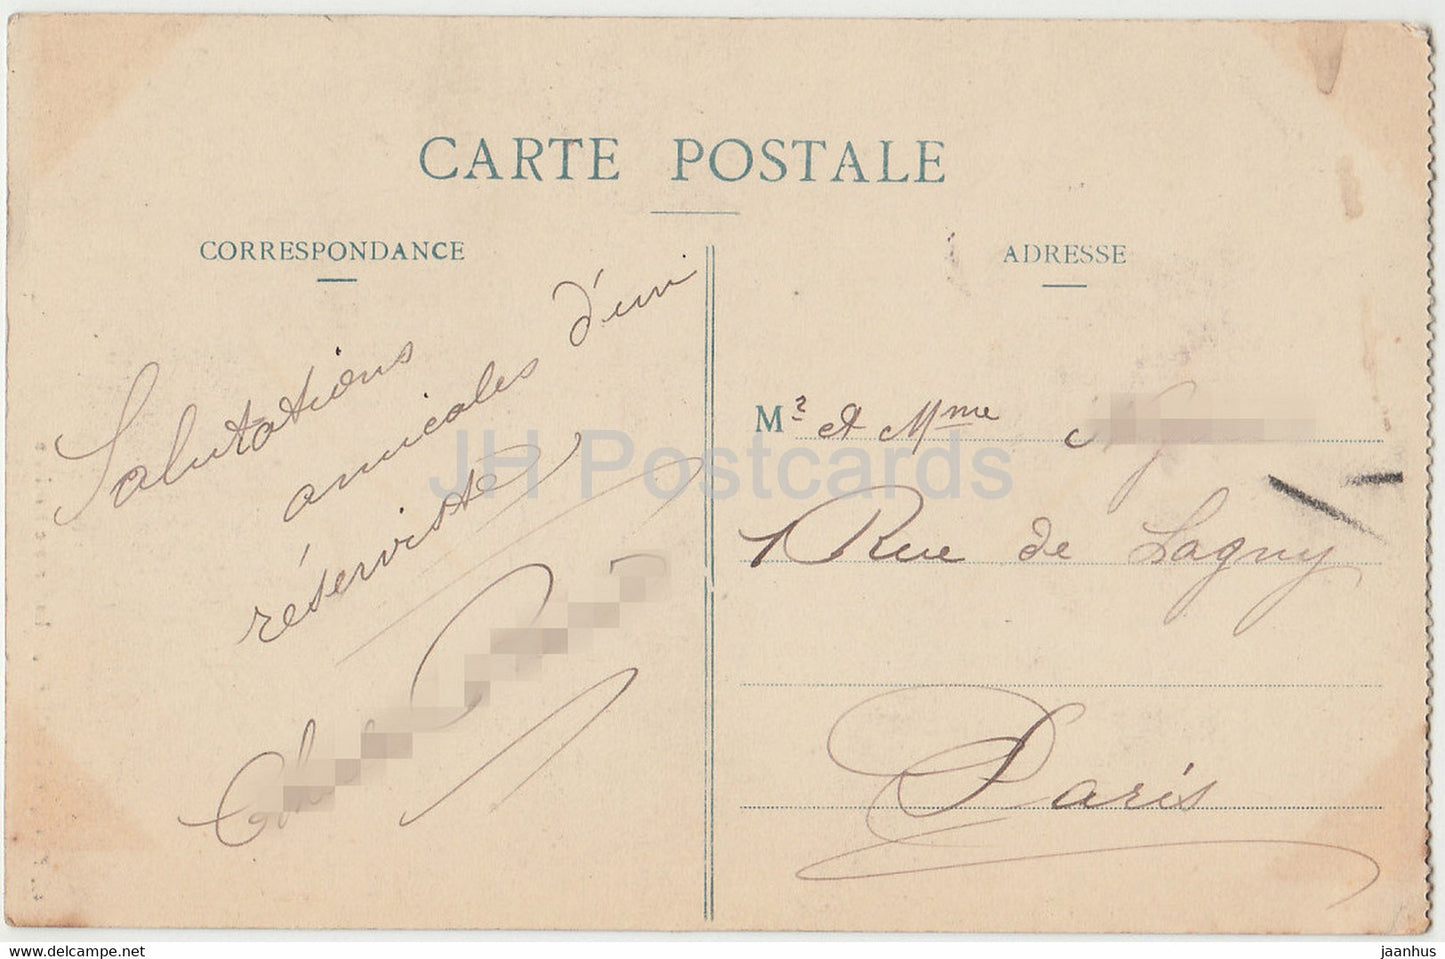 Rouen – La Grosse Horloge – Uhr – 458 – alte Postkarte – 1910 – Frankreich – gebraucht